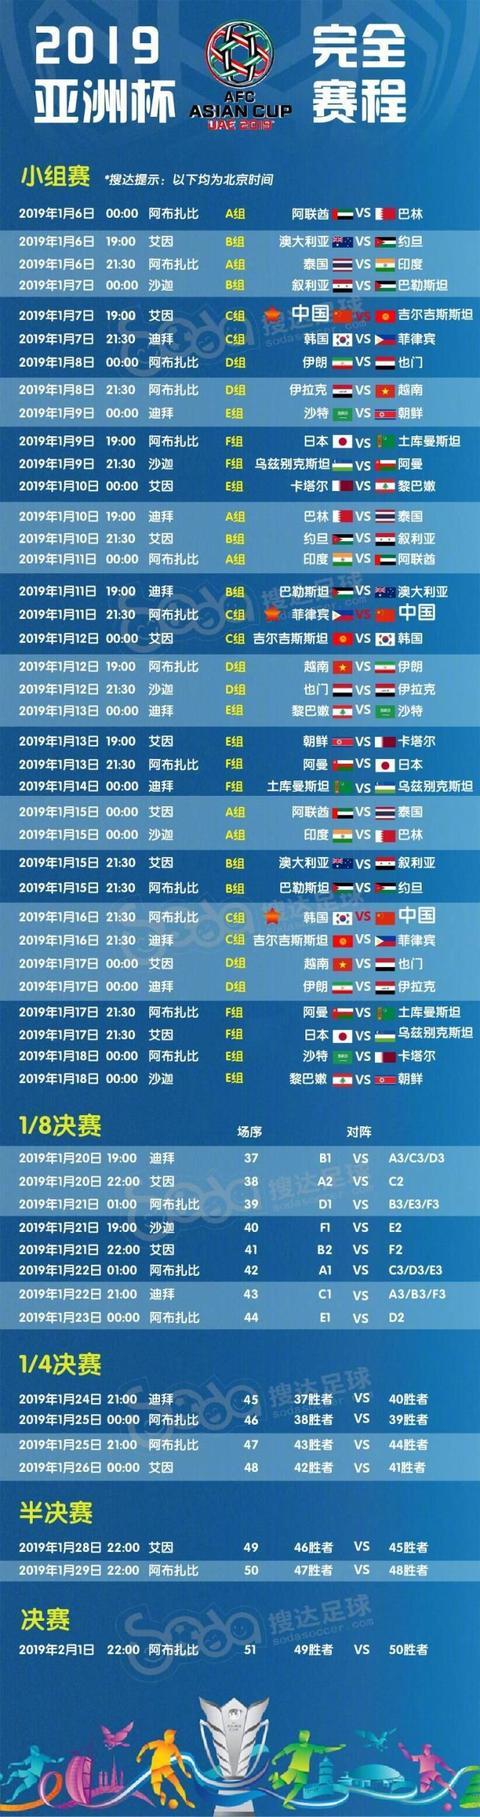 亚洲杯各小组排名一览表